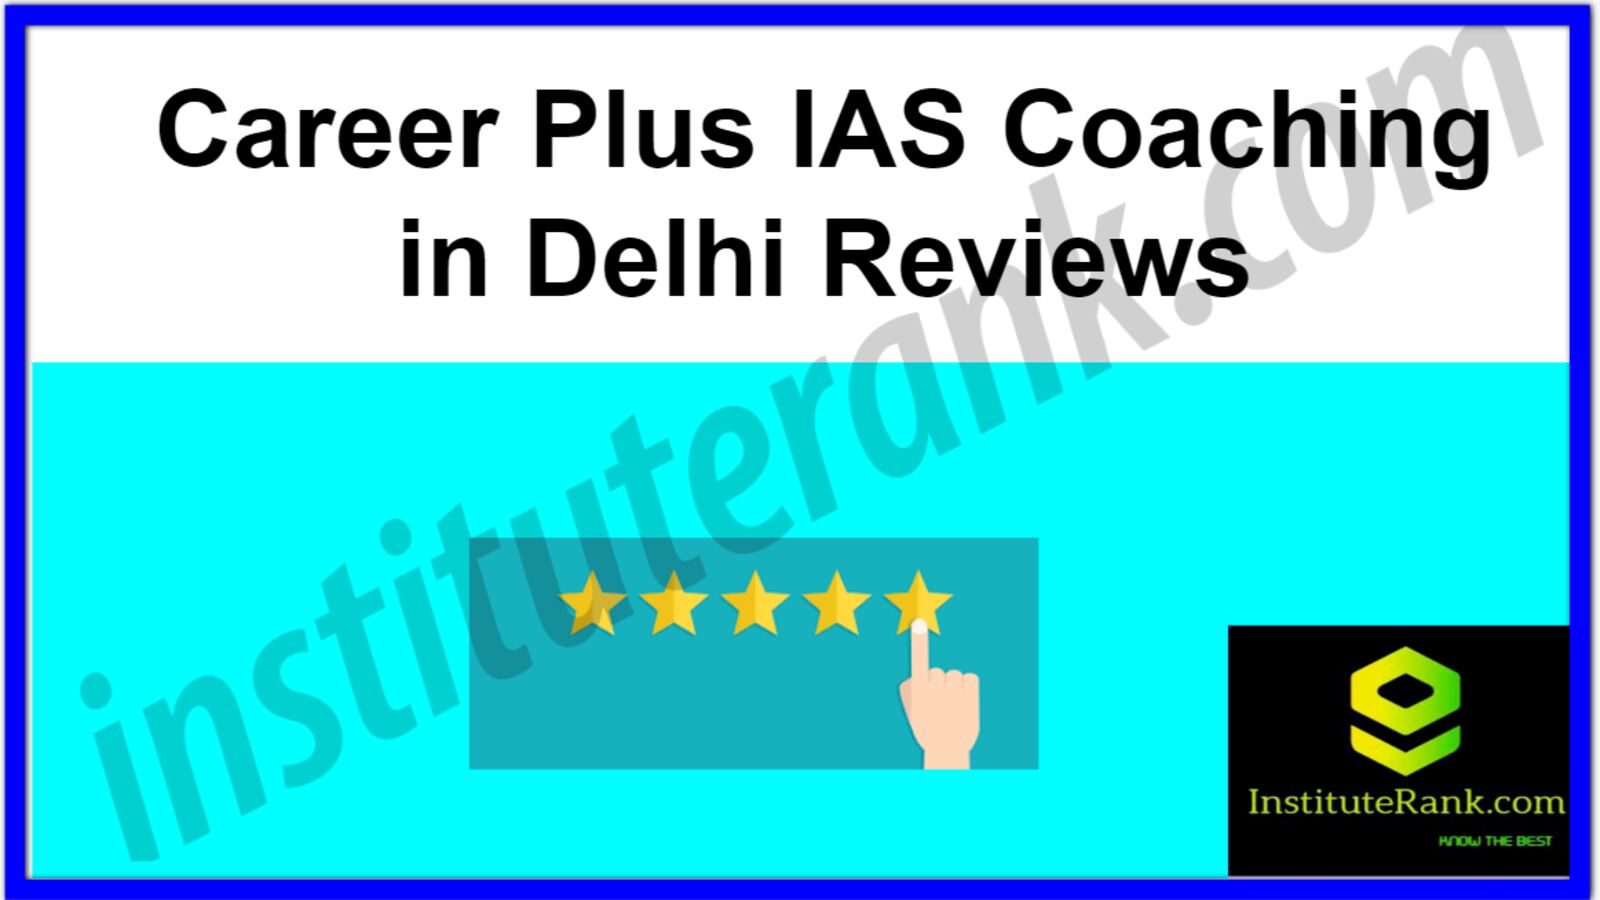 Career Plus IAS Coaching in Delhi